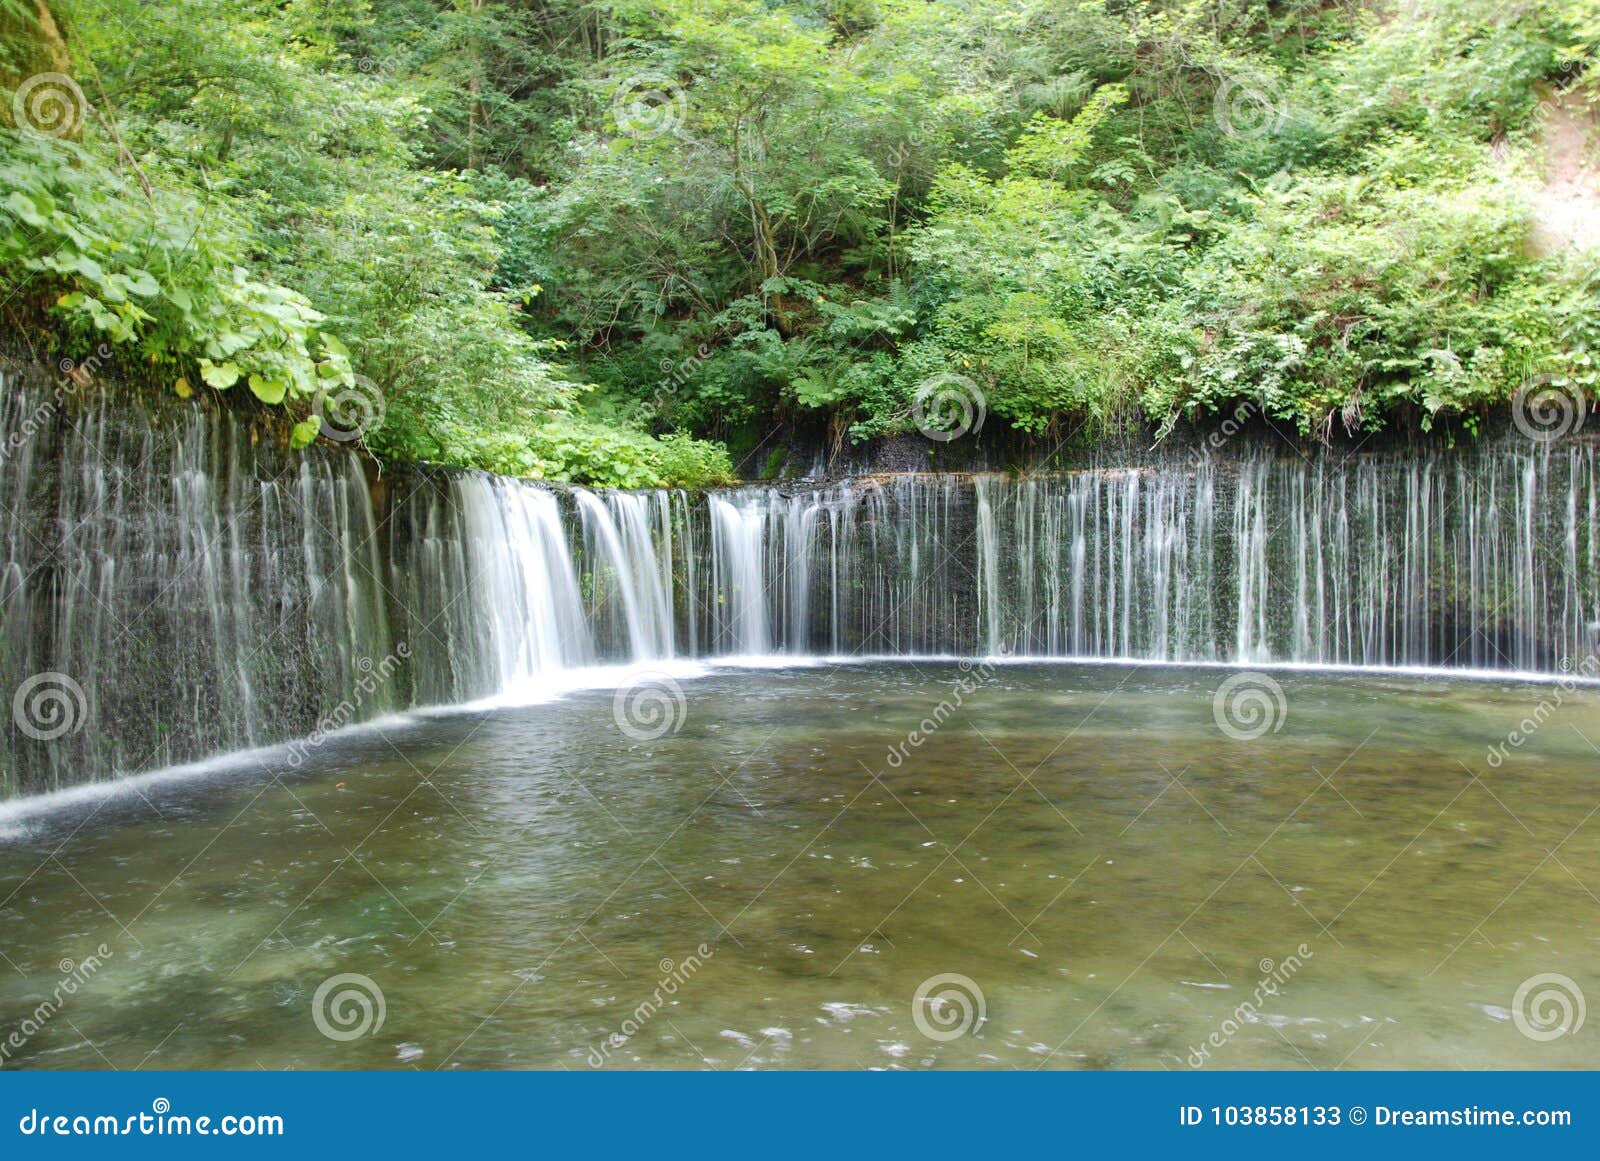 Shiraito Falls At Karuizawa Of Japan Stock Image Image Of Girl Waterfalls